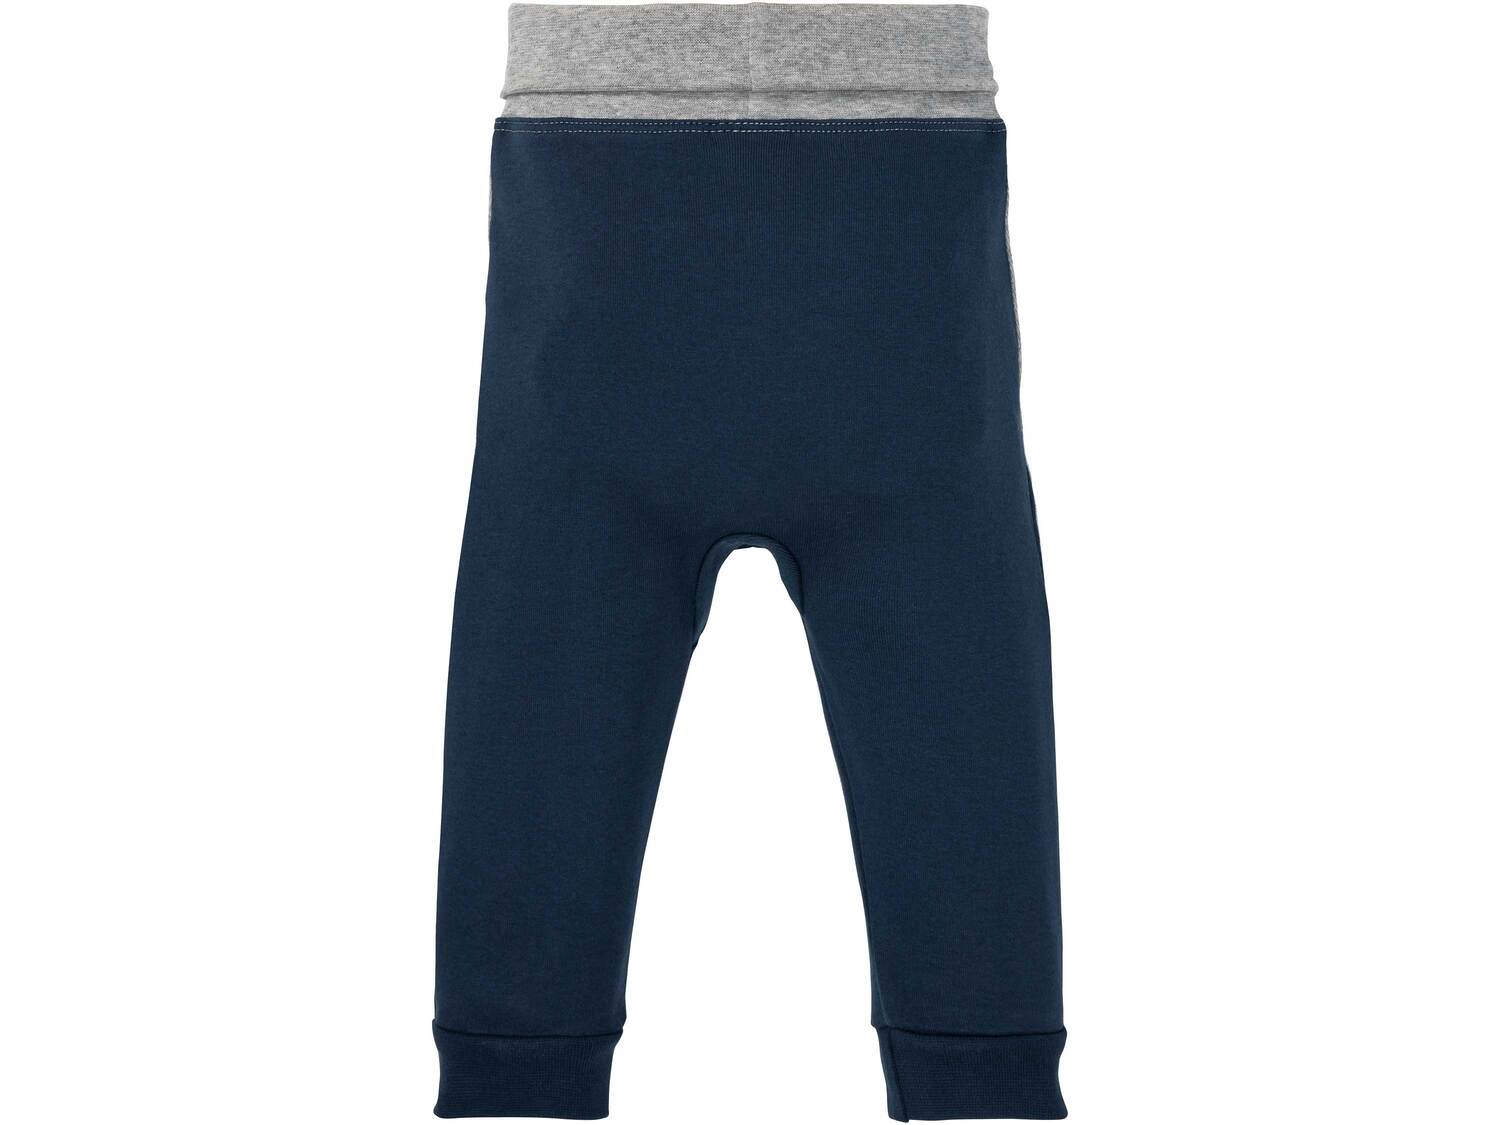 Spodnie niemowlęce z bawełny Lupilu, cena 9,99 PLN 
- rozmiary: 74-92
- 100% bawełny
- ...